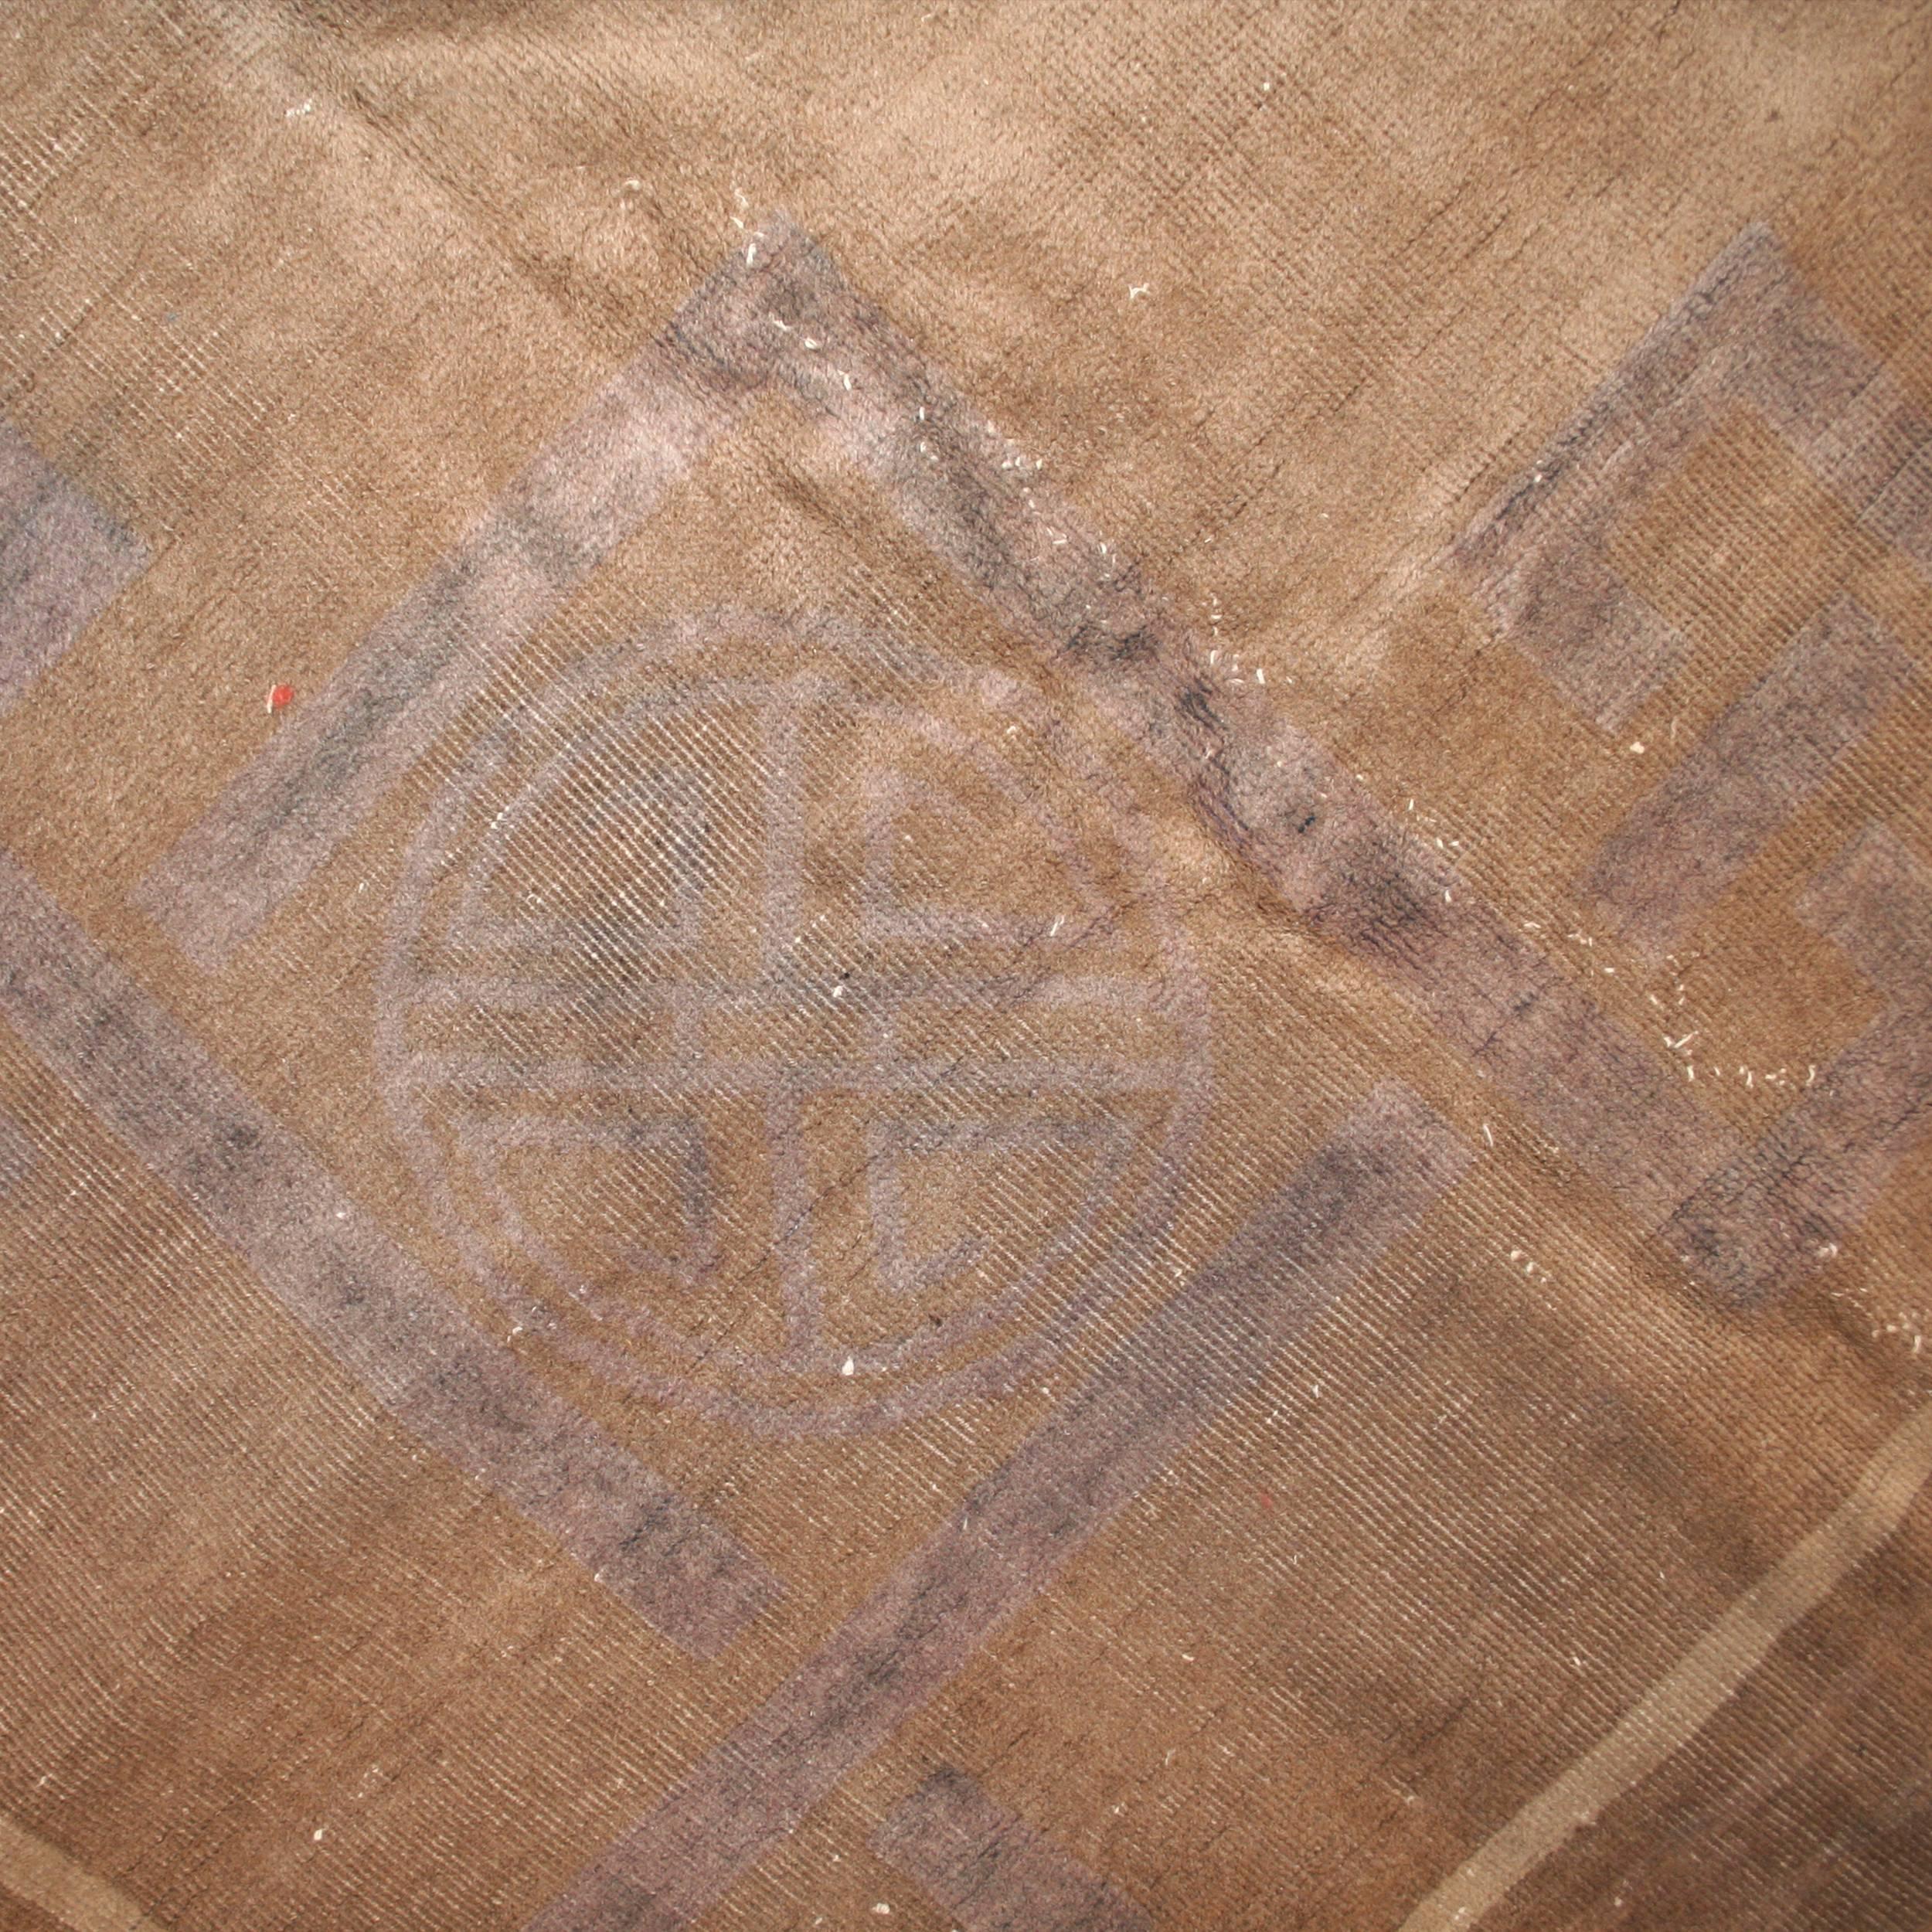 Dieser prächtige Teppich zeichnet sich durch ein großes zentrales Element aus, das aus einer Stilisierung des chinesischen Ideogramms 